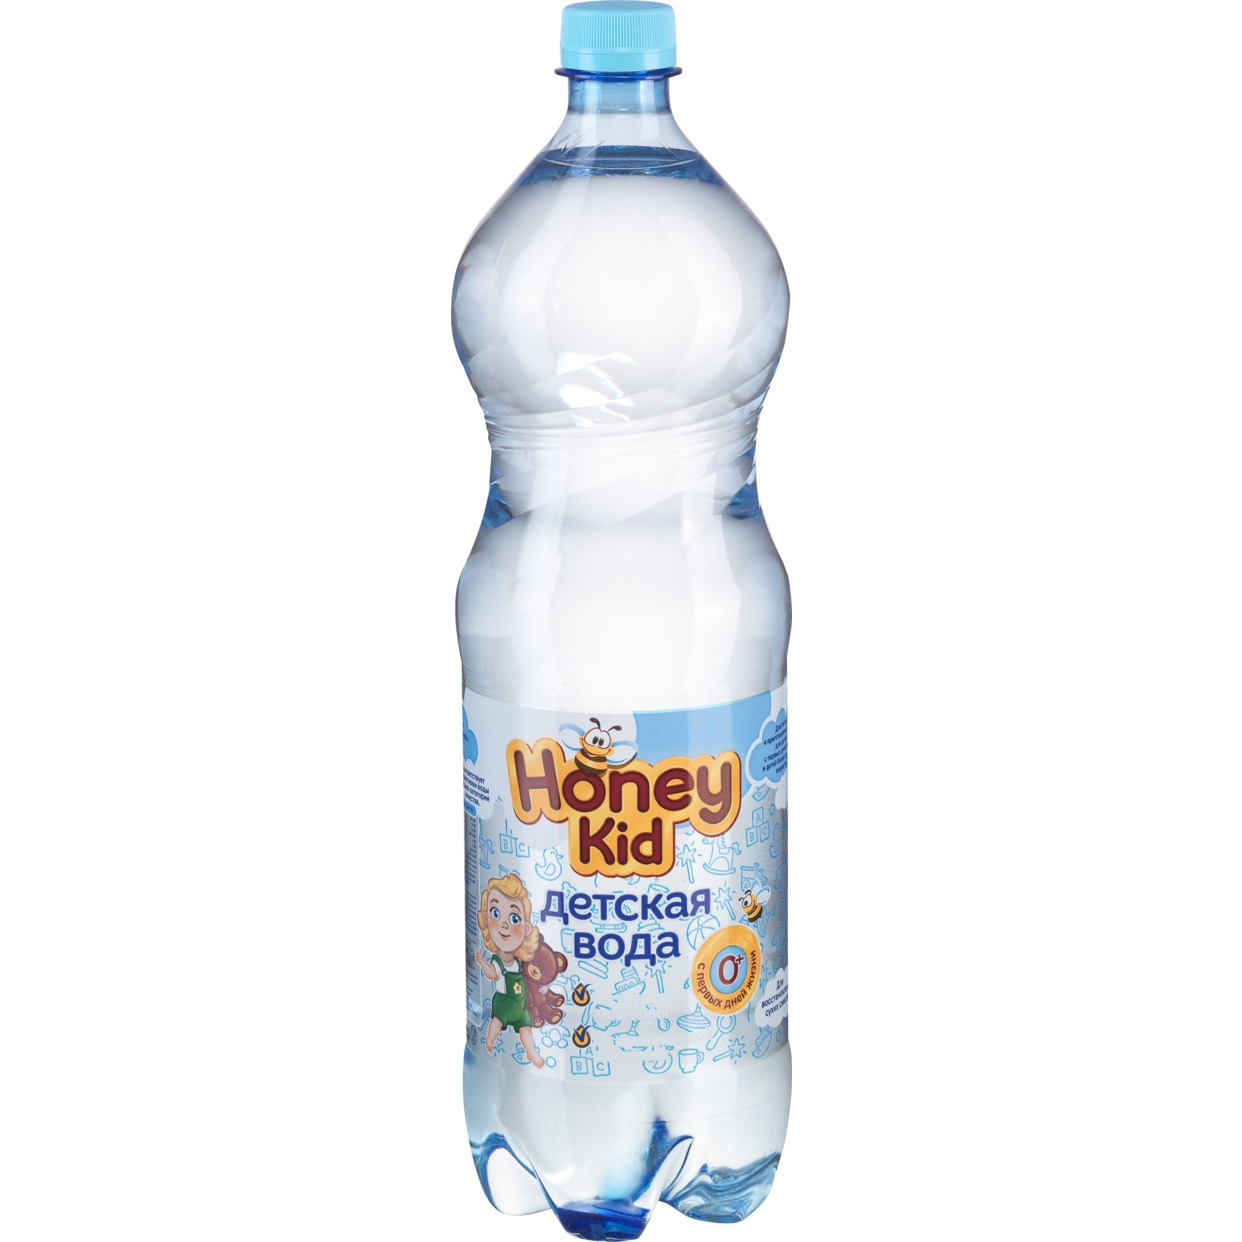 Вода Honey Kid, черноголовская, 1,5 л